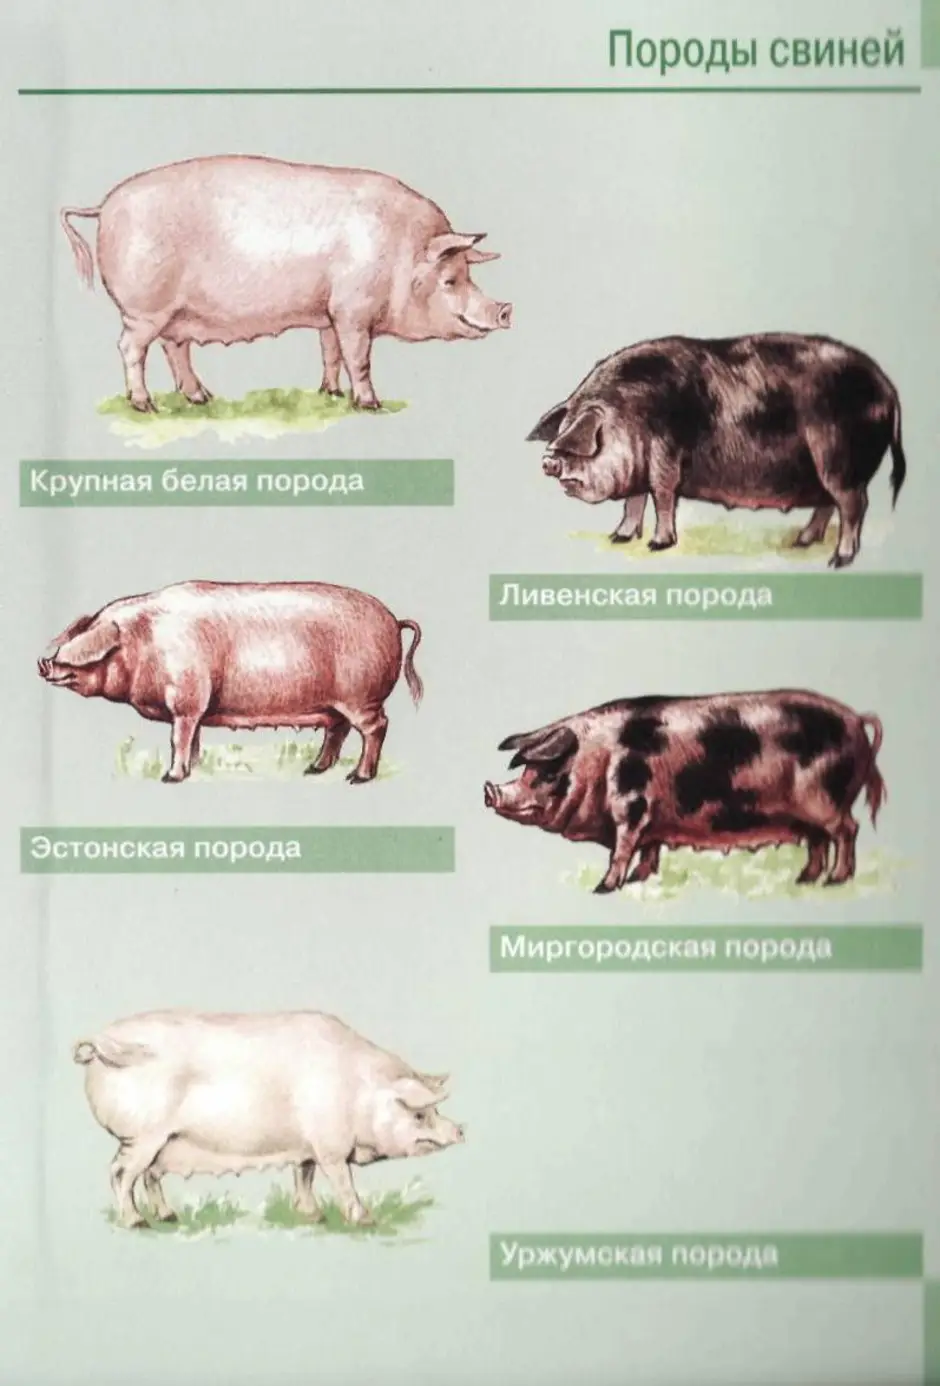 Список свиньи. Боргояковская порода свиней. Породы свиней мясного направления. Порода свиней Рослик. Породы свиней сального направления продуктивности.